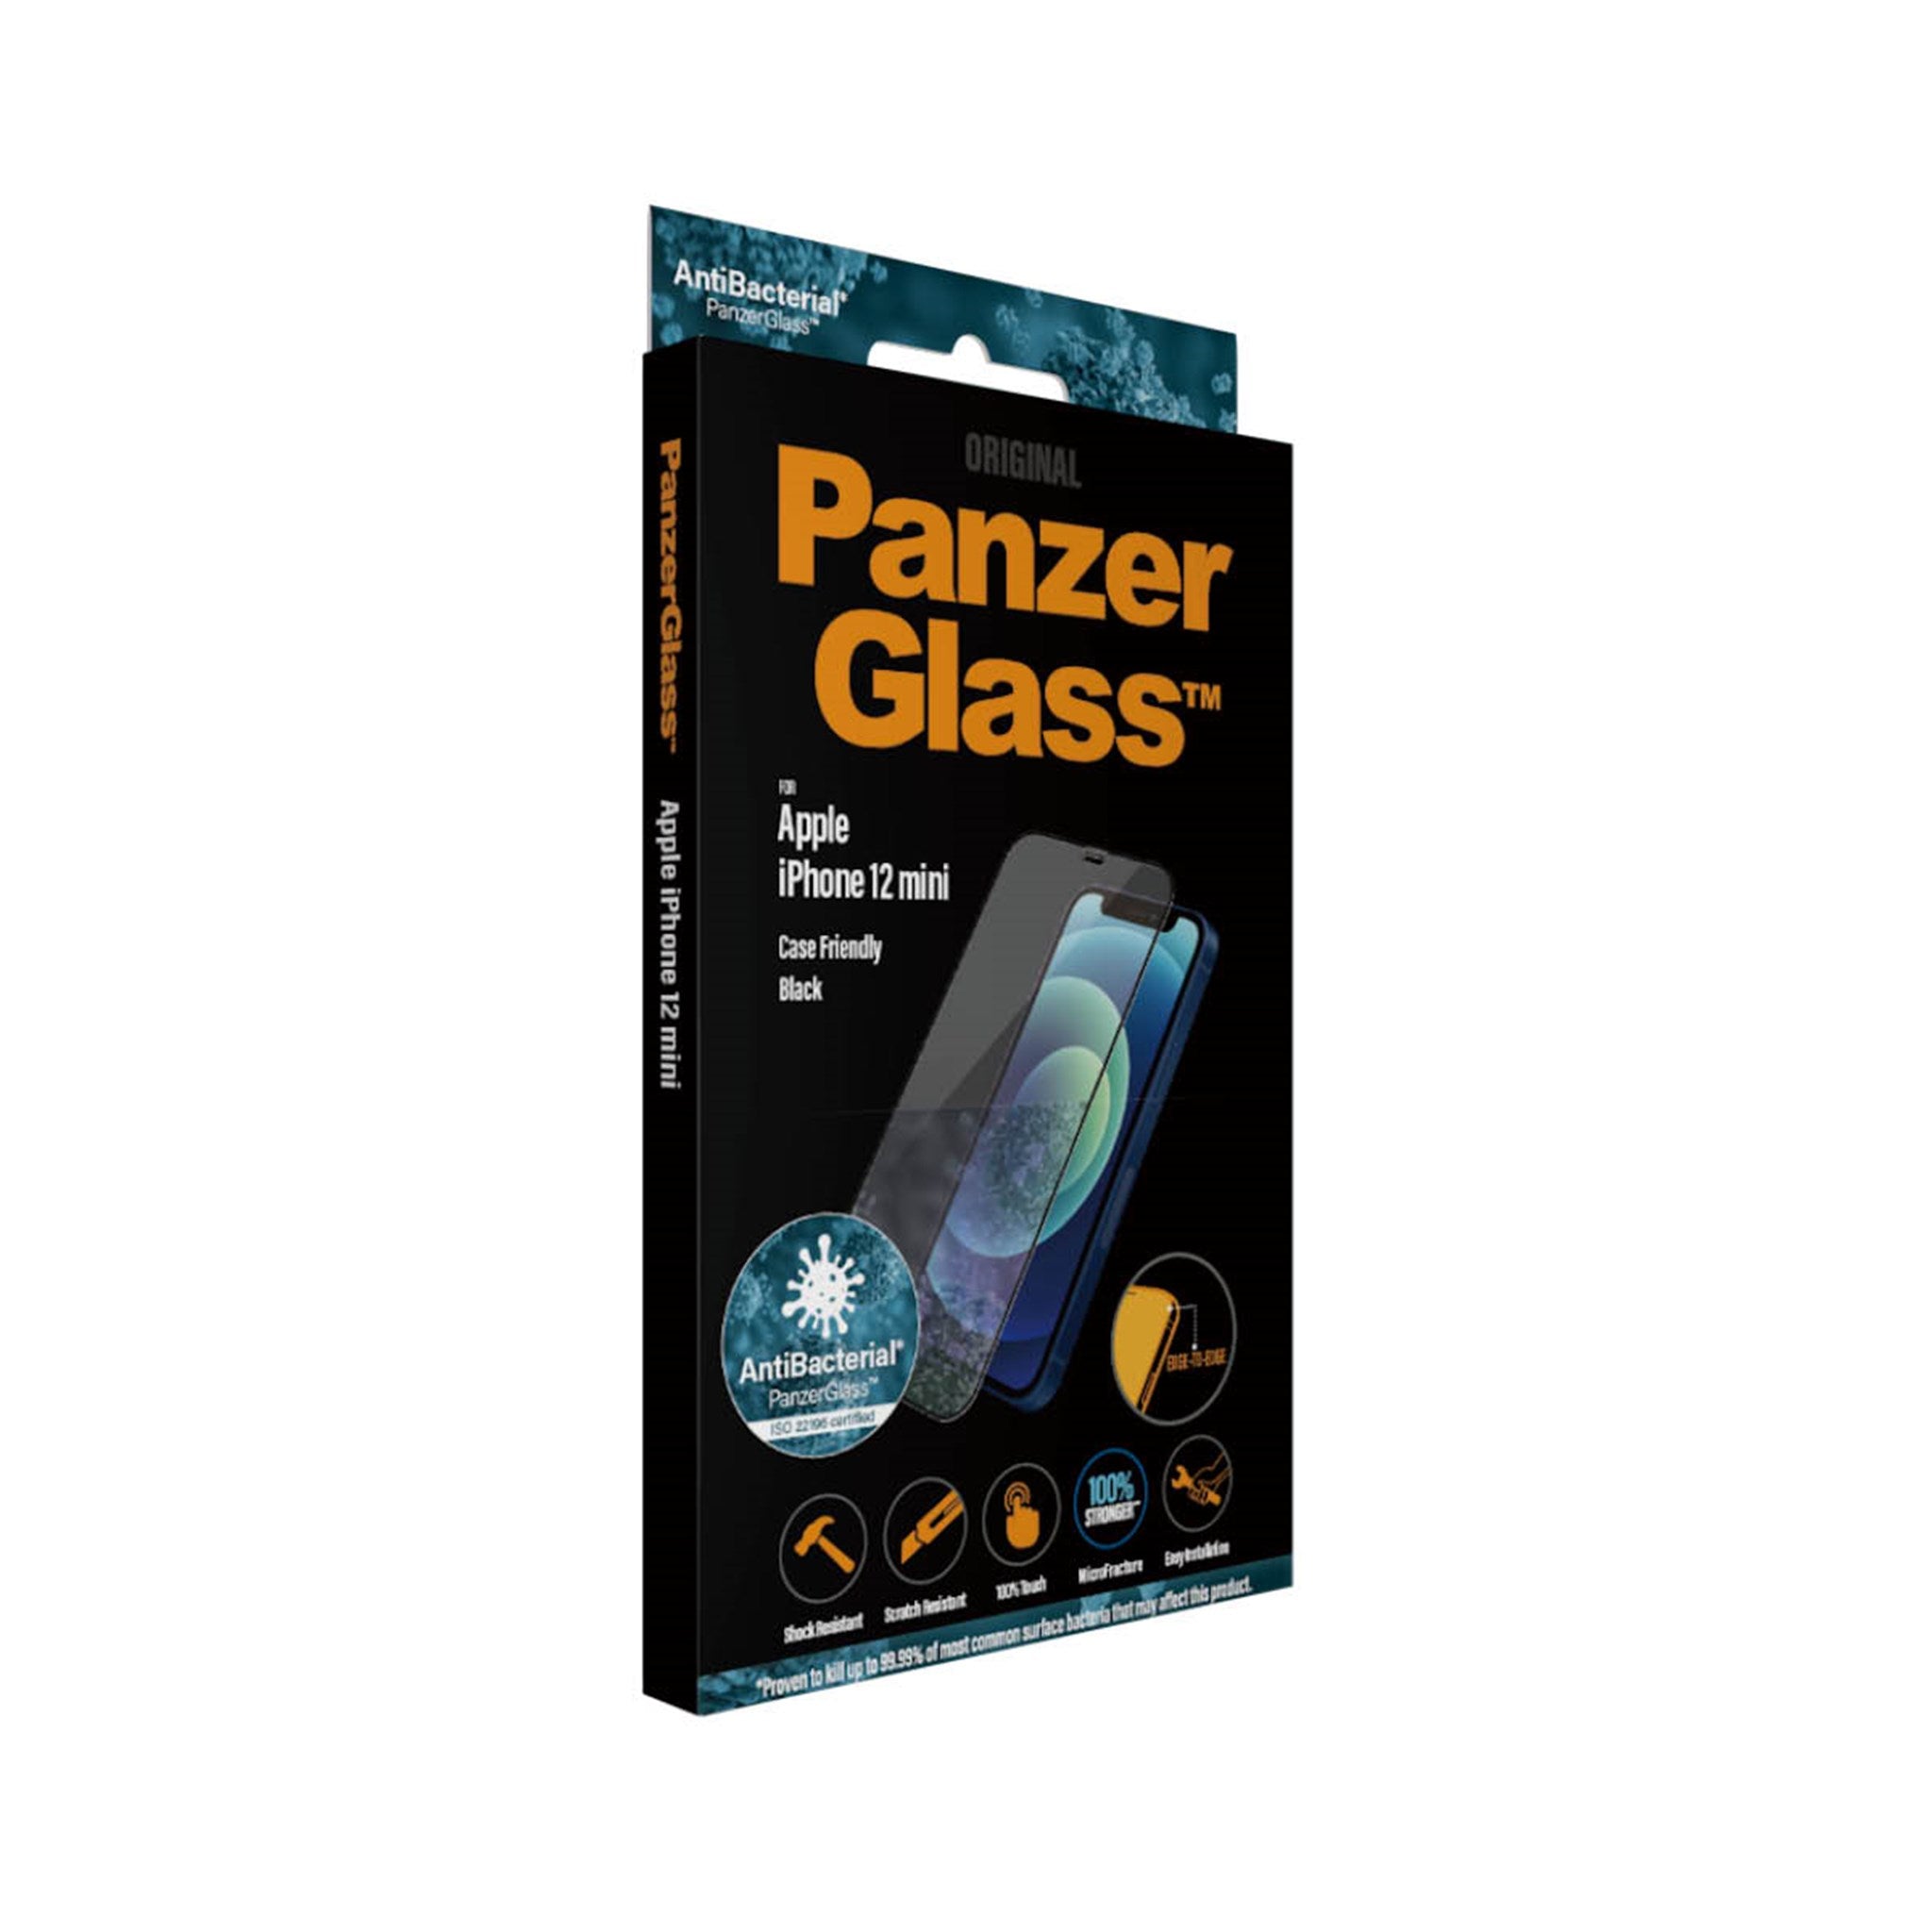 PanzerGlass Edge to Edge - Apple iPhone 12 Mini Verre trempé Protection d' écran - Compatible Coque - Noir 4-108580 